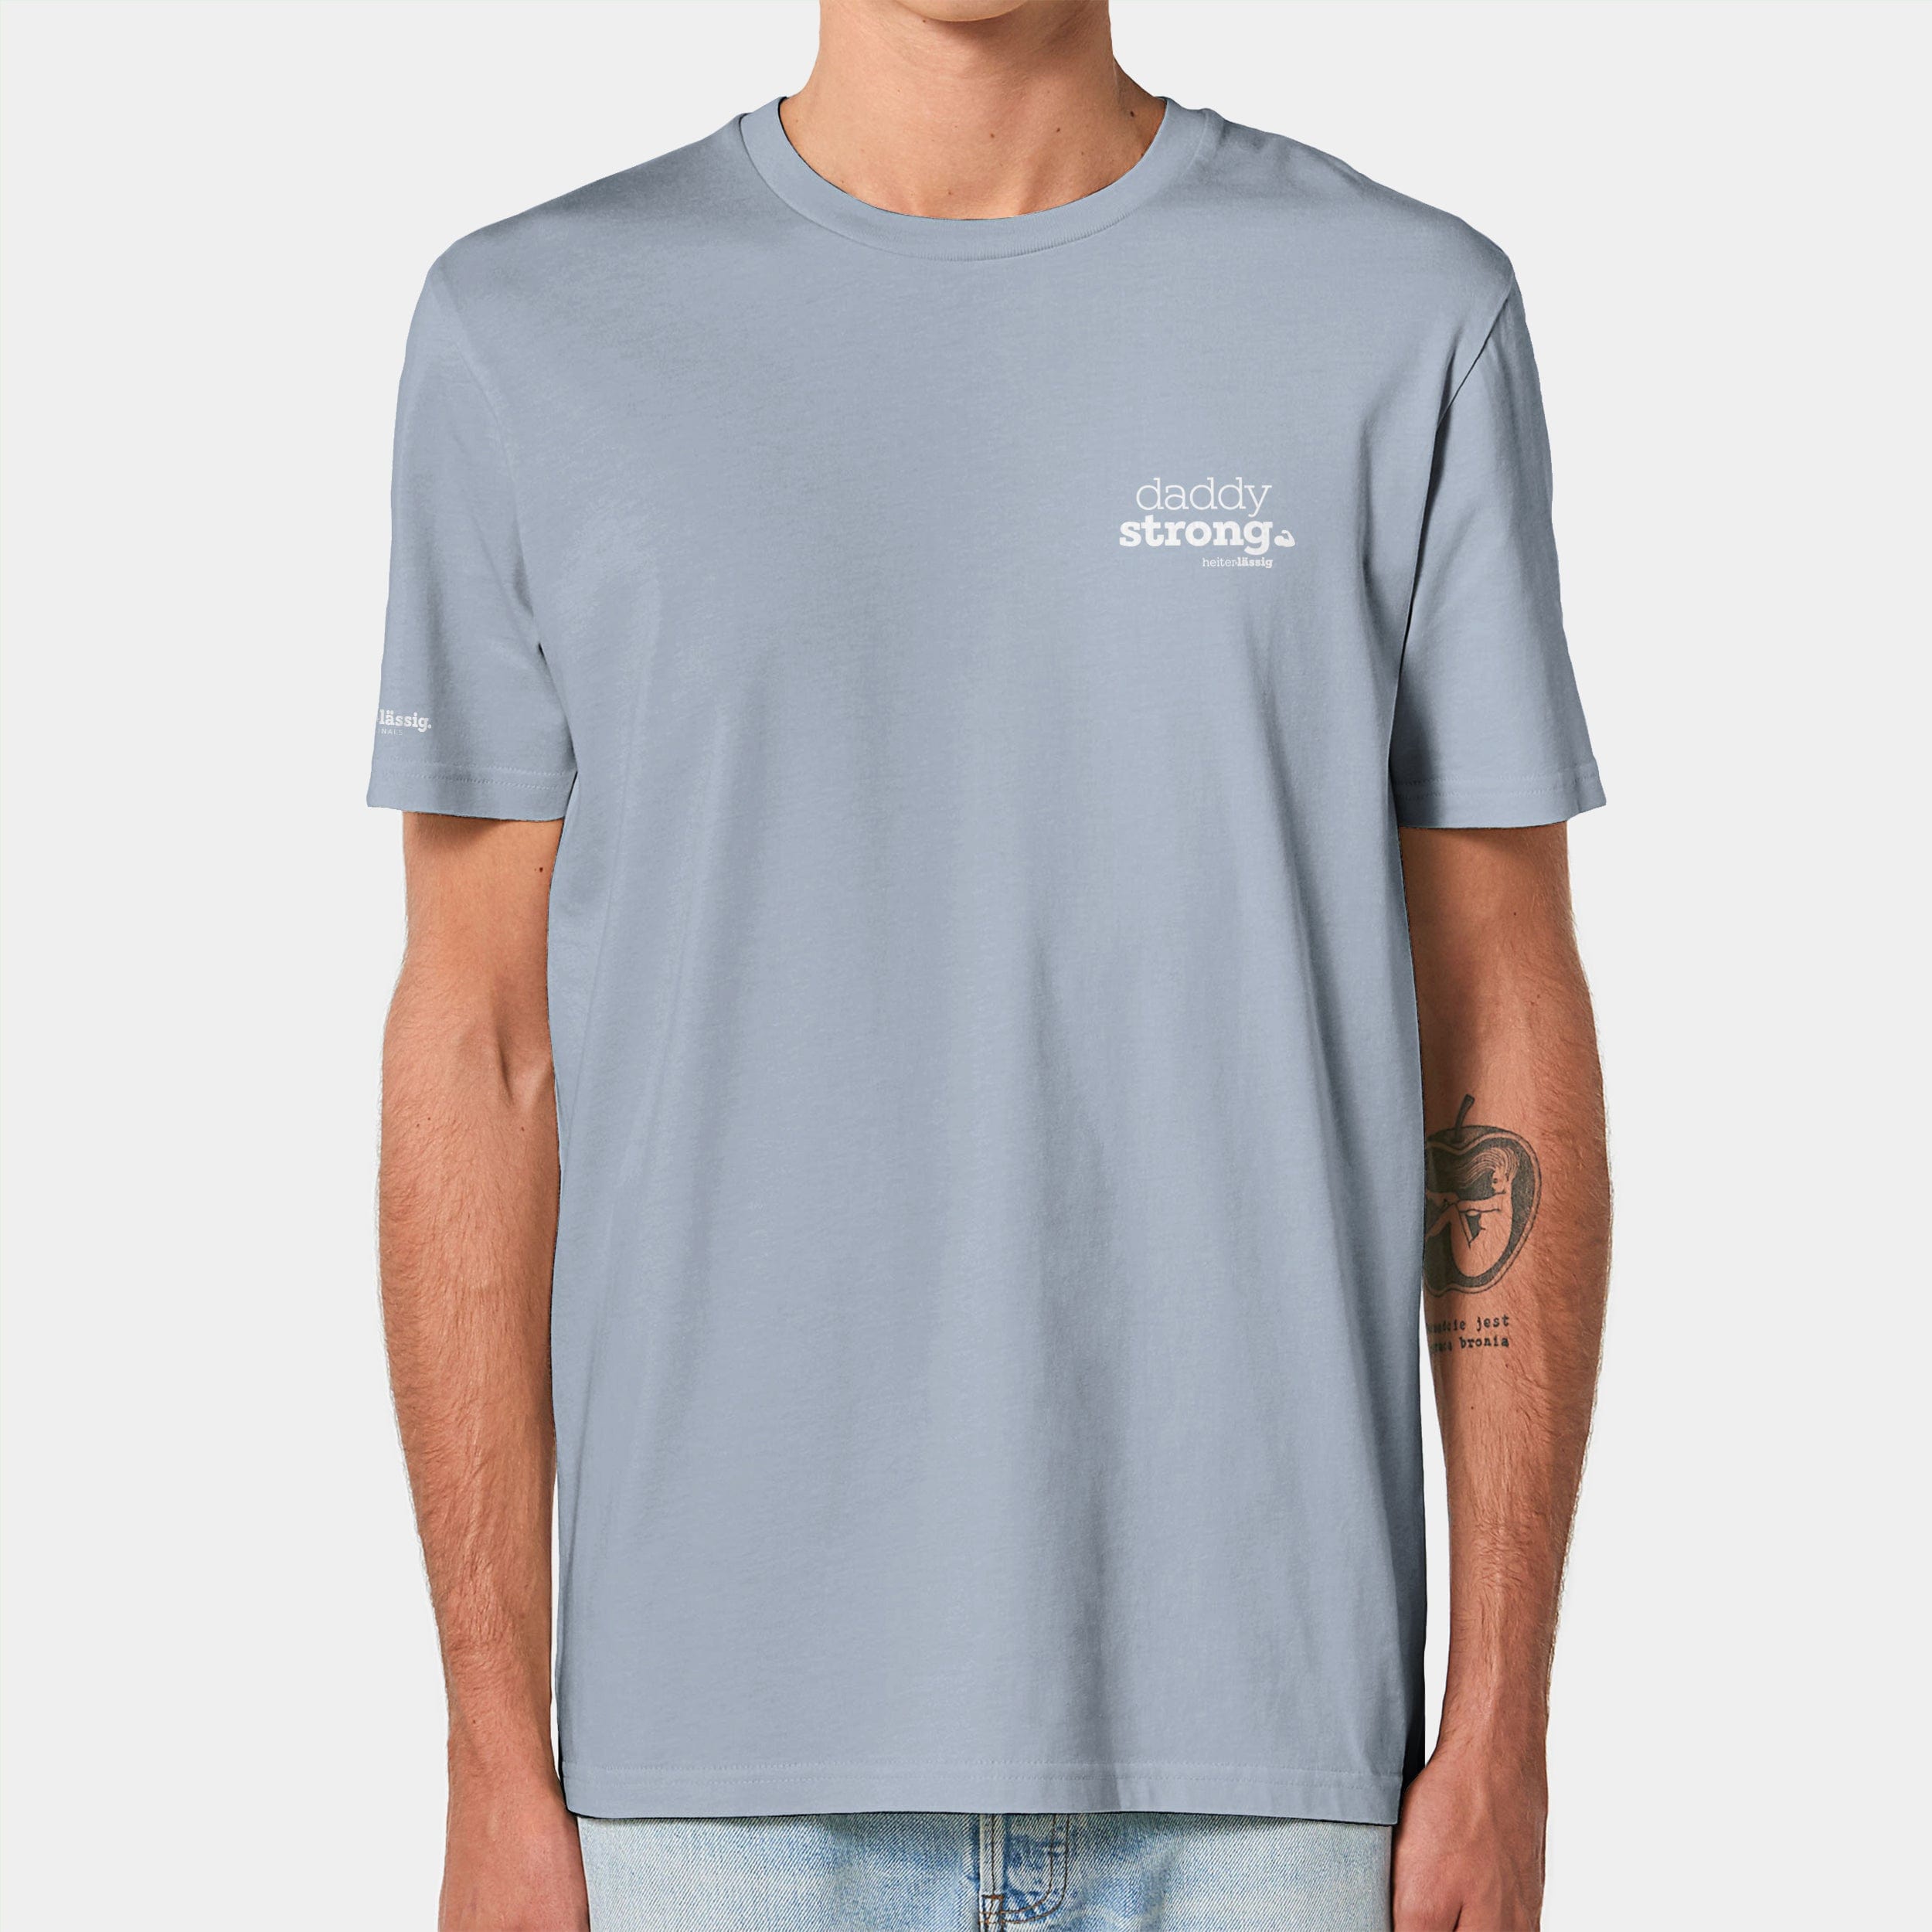 HEITER & LÄSSIG T-Shirt ORIGINAL "daddystrong" XXS / serene blue - aus nachhaltiger und fairer Produktion